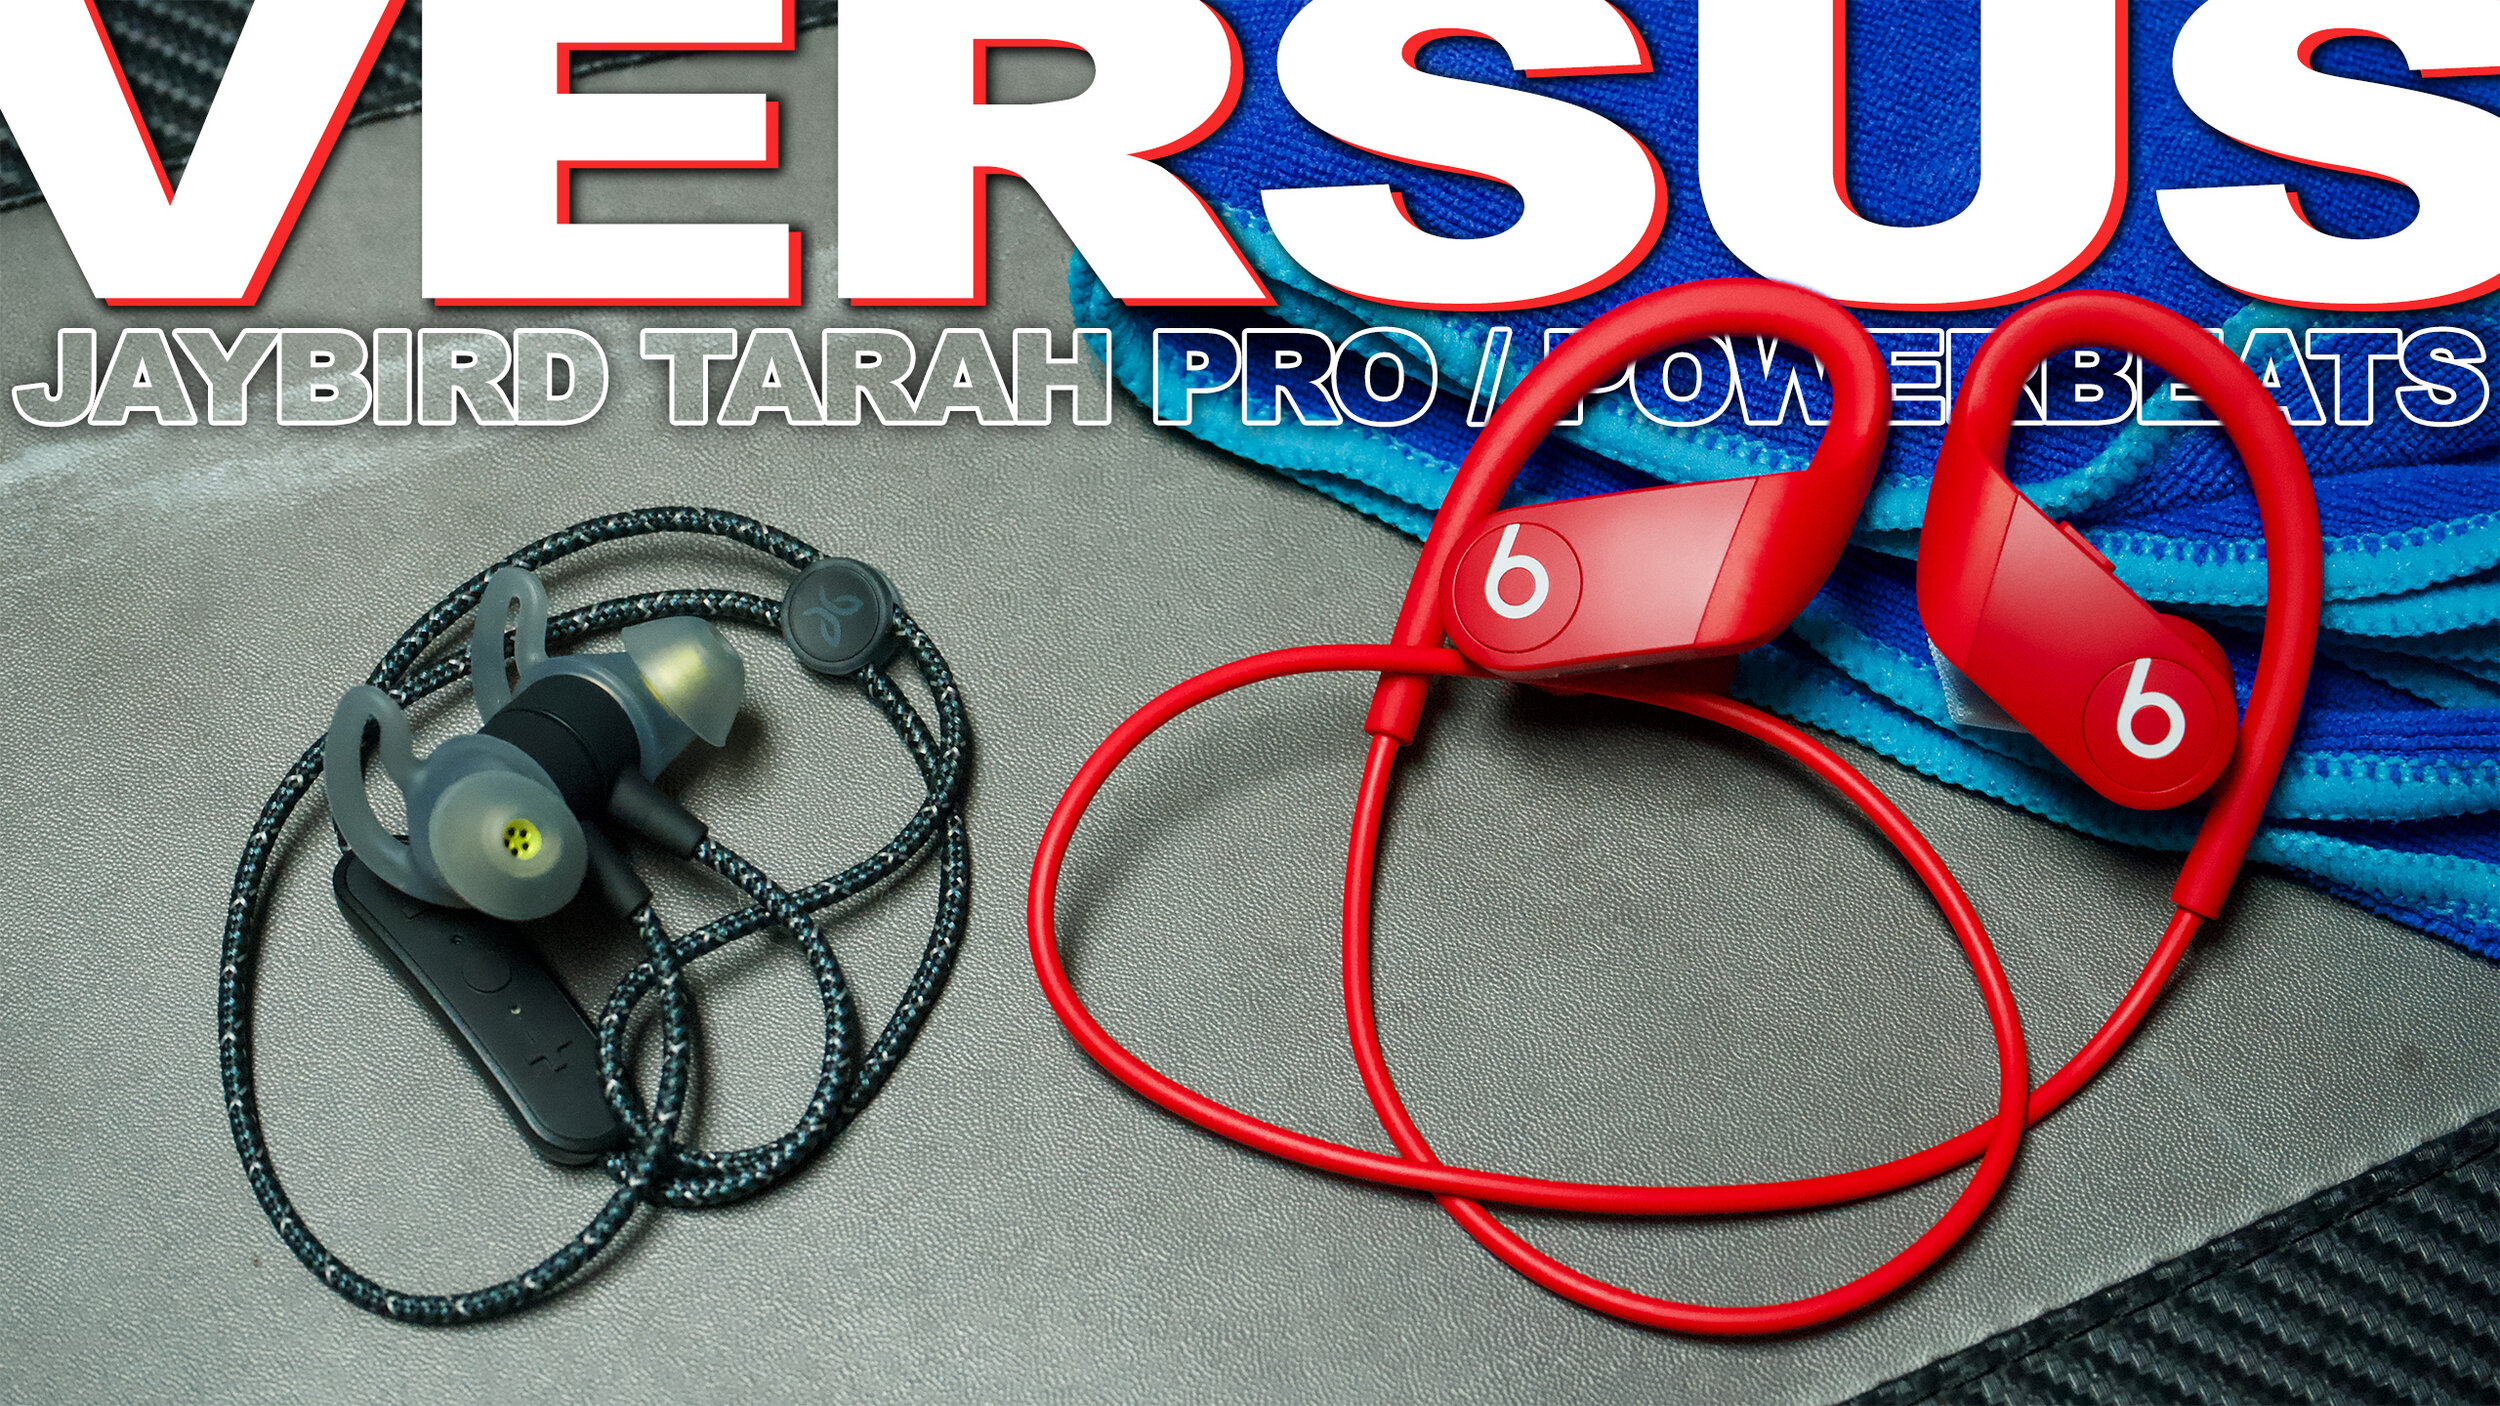 powerbeats 3 vs tarah pro